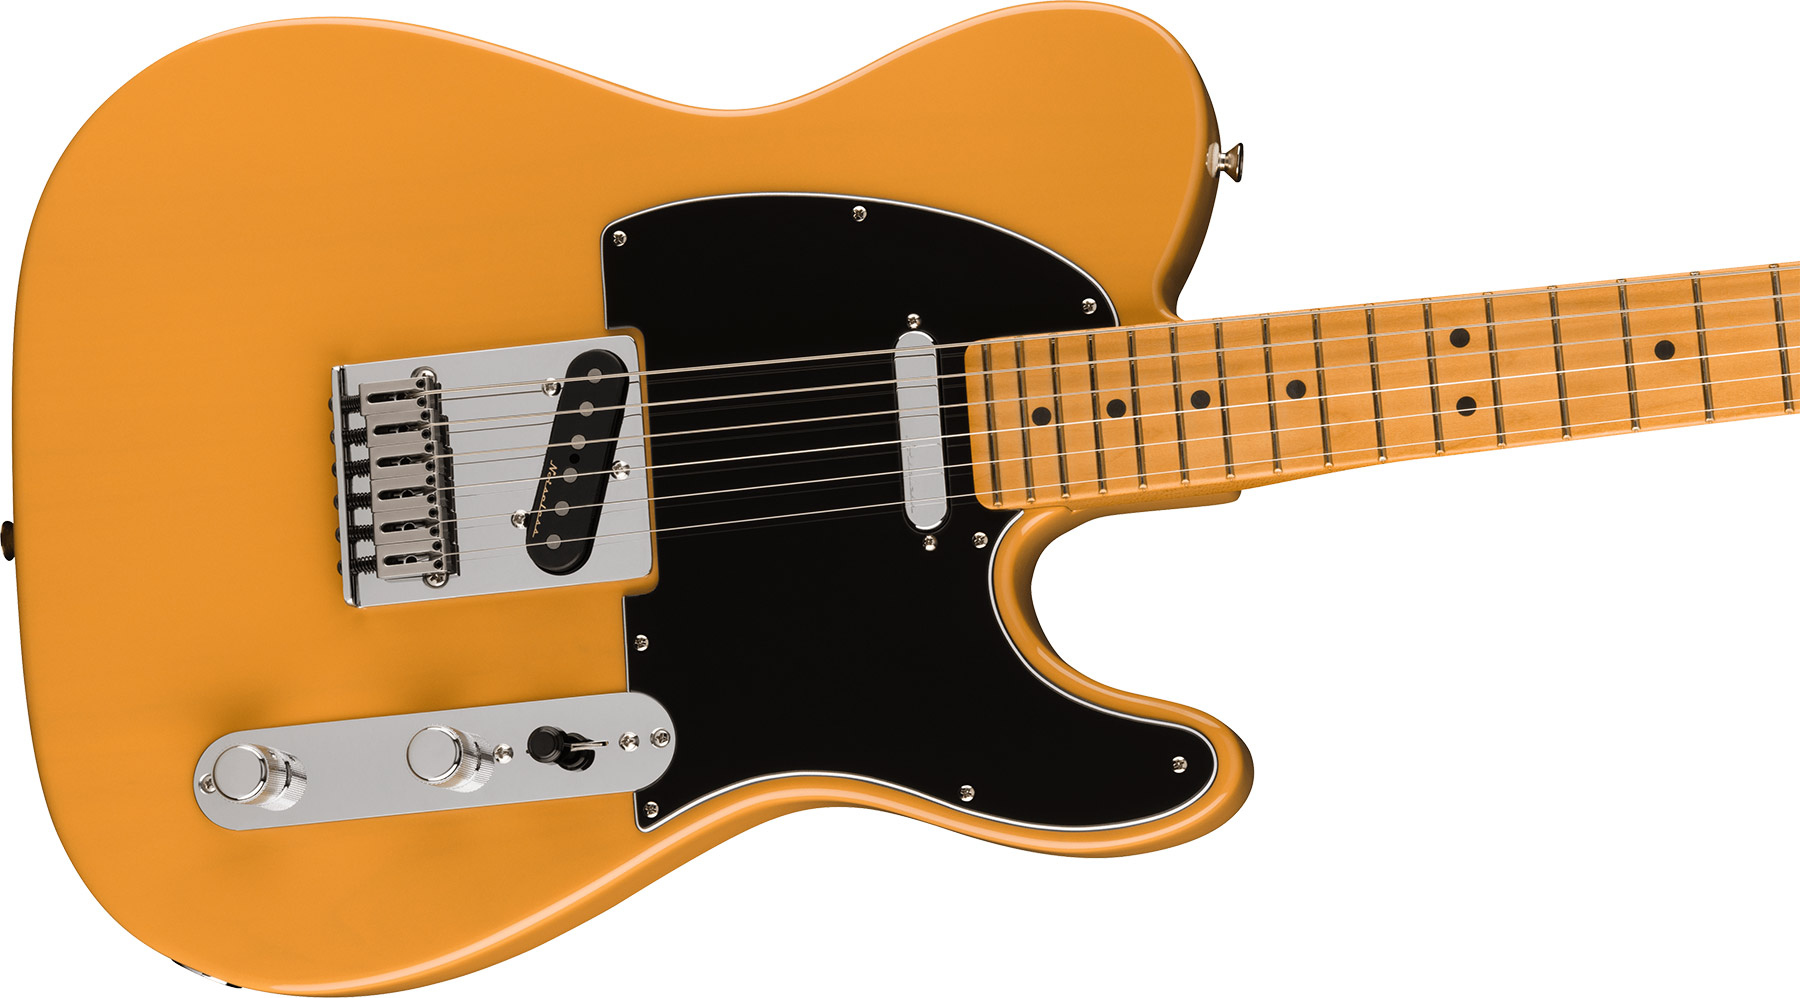 Fender Tele Player Plus Mex 2023 2s Ht Mn - Butterscotch Blonde - Guitarra eléctrica con forma de tel - Variation 2